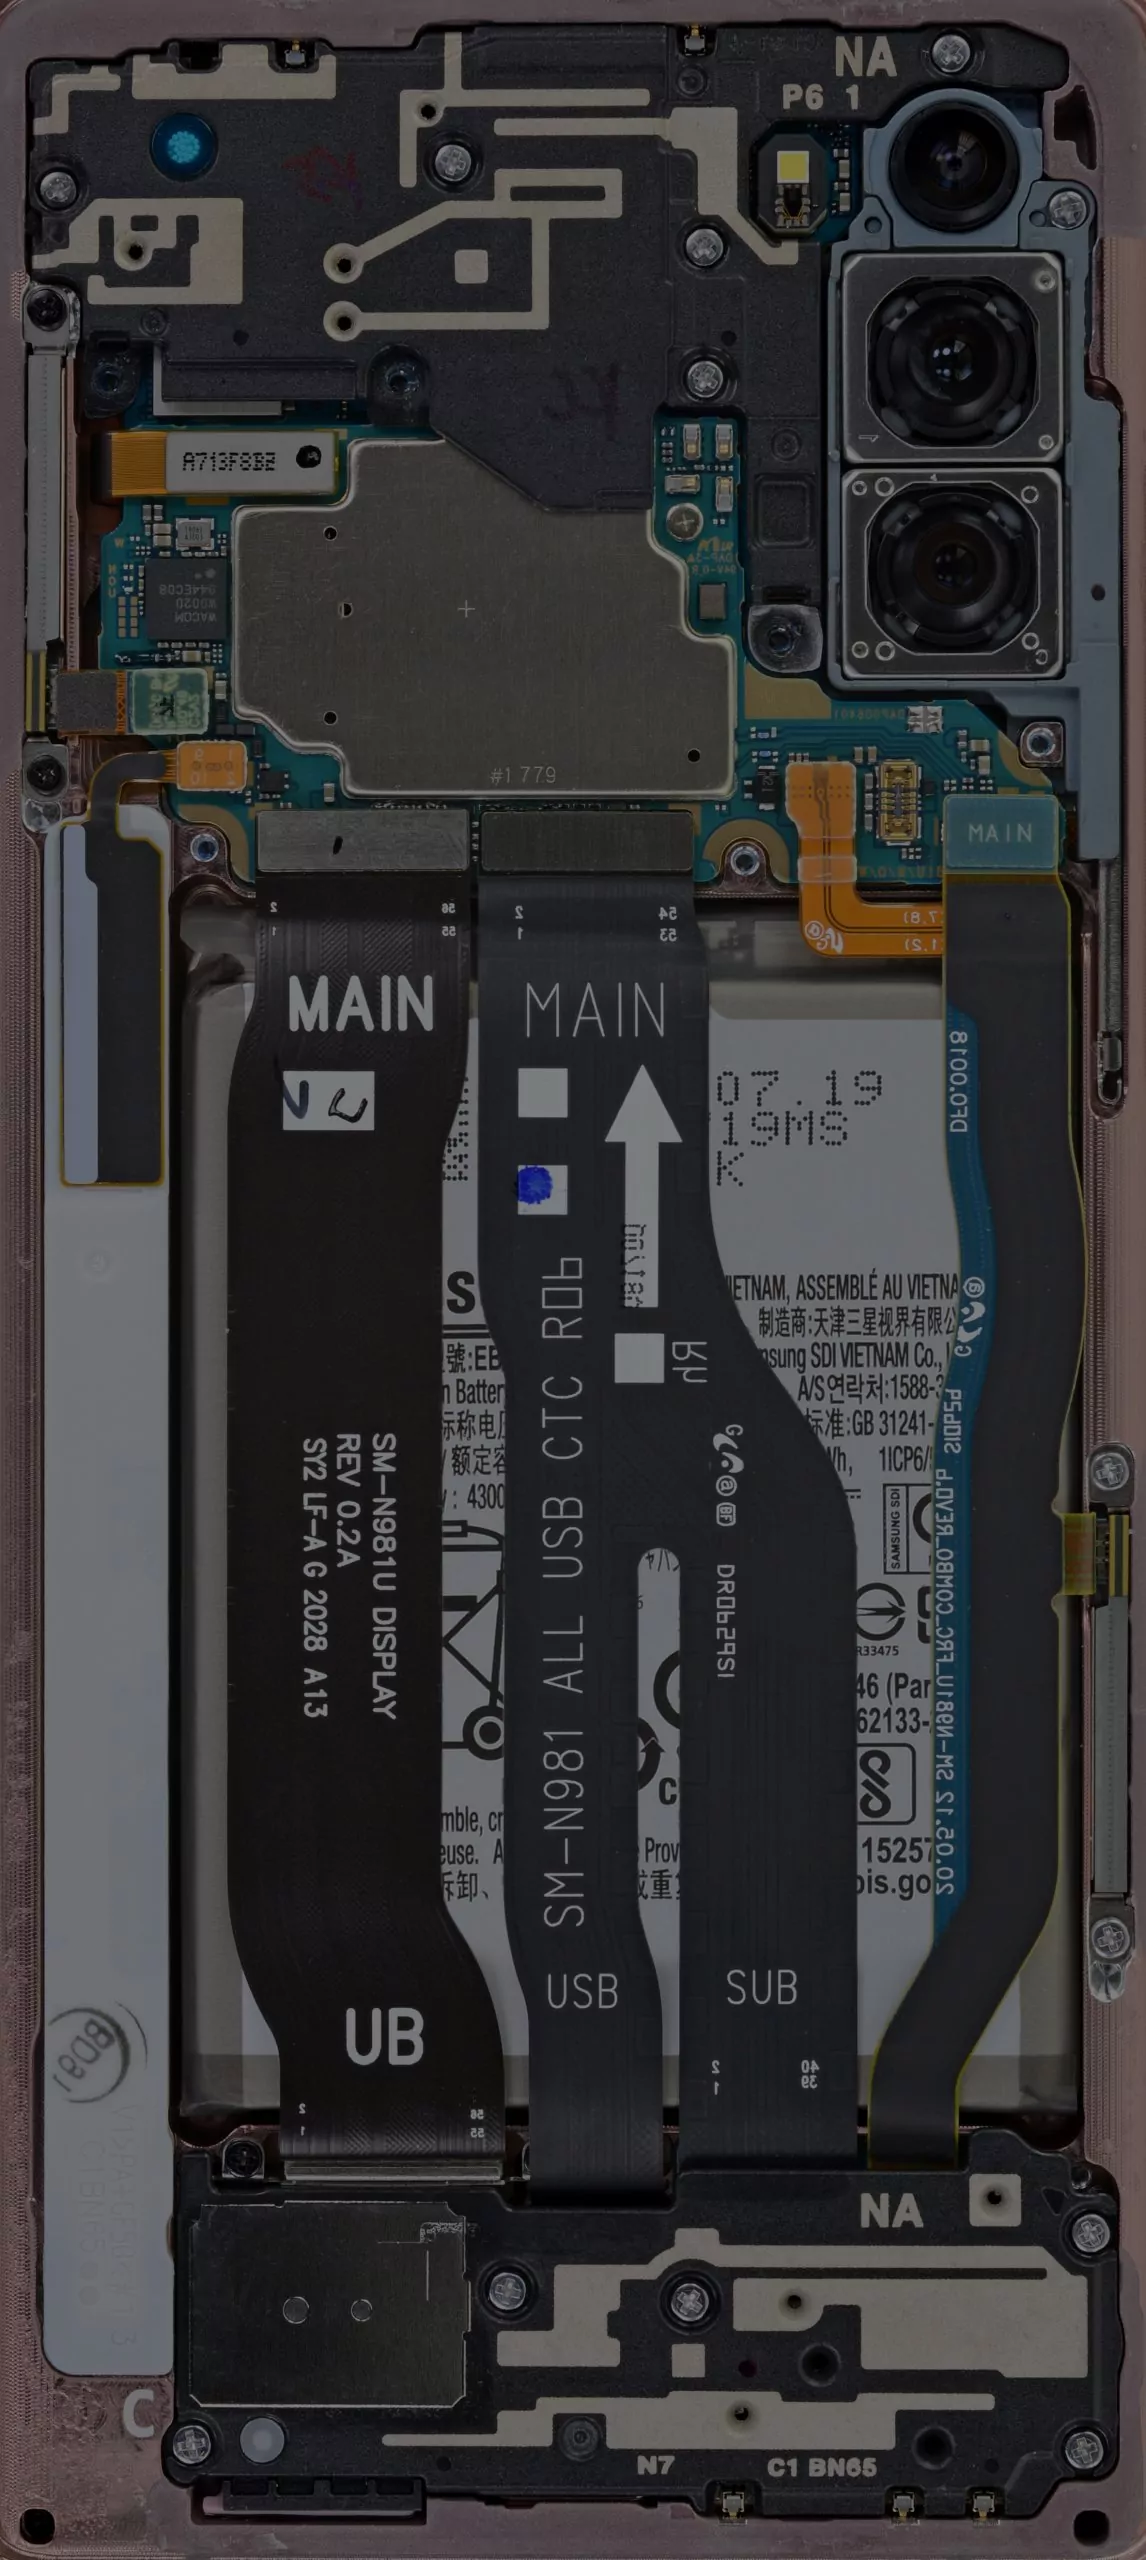 Hình nền Galaxy Note20 mang đến cho bạn những trải nghiệm tuyệt vời với màn hình Super AMOLED của nó. Mỗi lần bạn mở khóa điện thoại, một khoảnh khắc sáng tạo đang chờ đợi bạn khám phá. Hãy tải hình nền này để cảm nhận những tính năng đặc biệt của chiếc điện thoại cao cấp này.